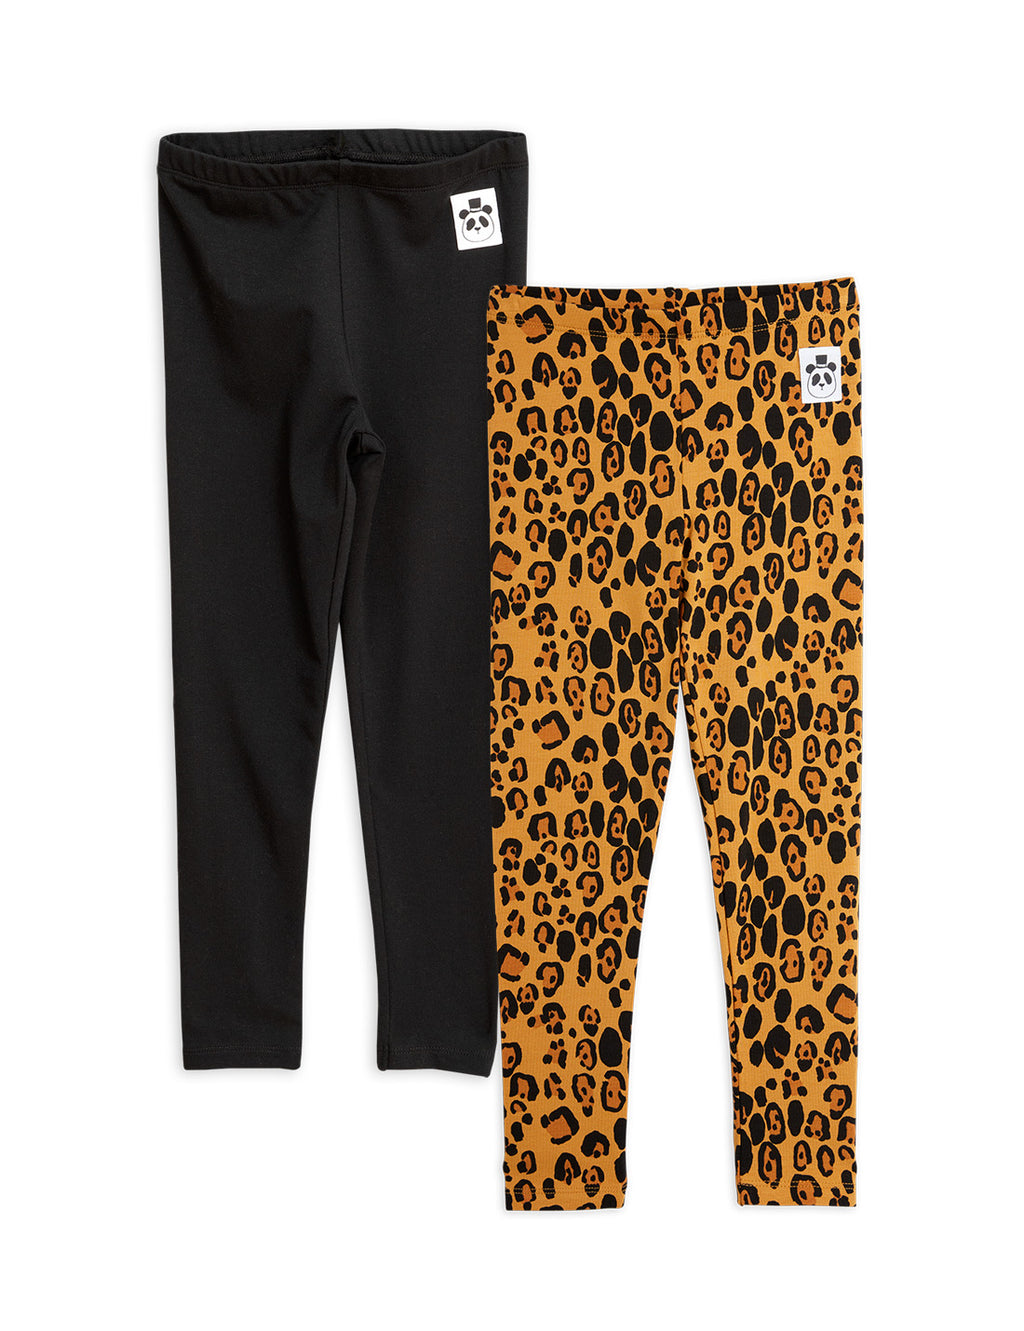 MINI RODINI / Basic Leopard legging - 2pack